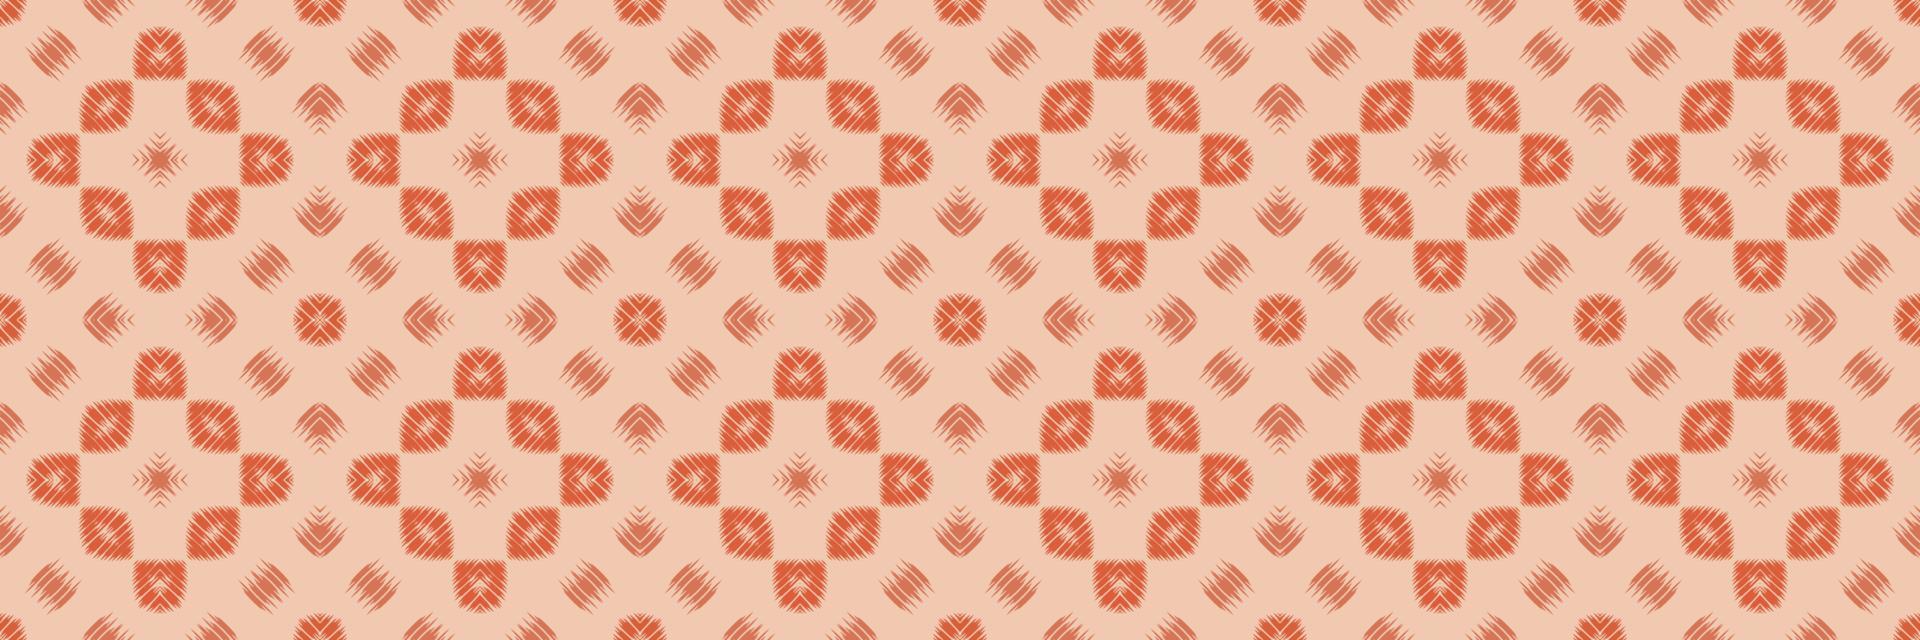 batik tessile ikkat o ikat banda senza soluzione di continuità modello digitale vettore design per Stampa saree Kurti Borneo tessuto confine spazzola simboli campioni progettista